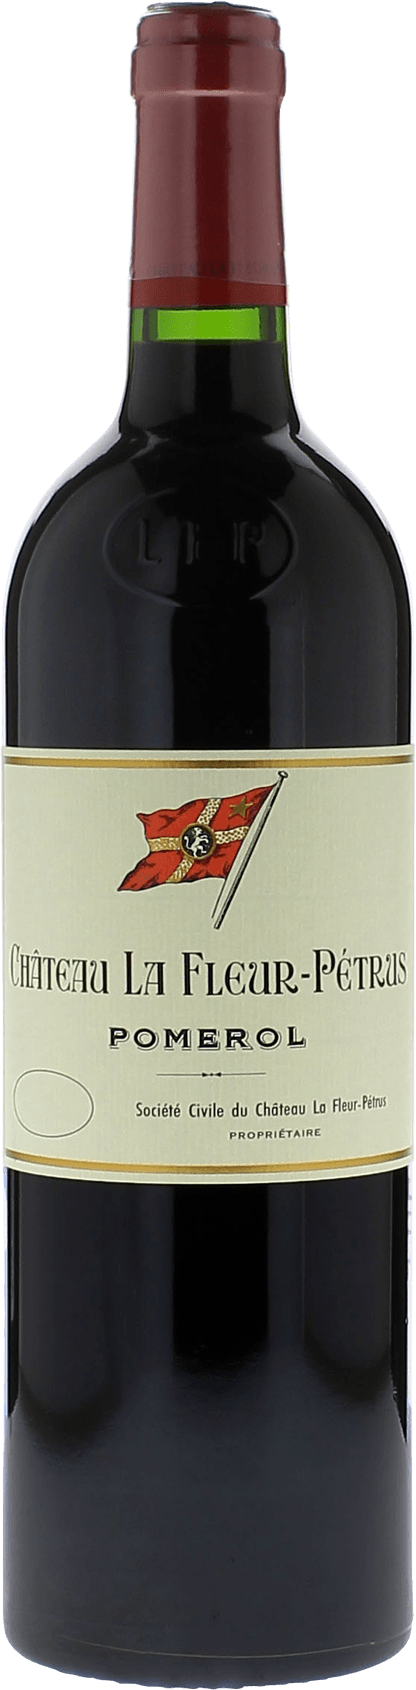 La fleur petrus 2008  Pomerol, Bordeaux rouge